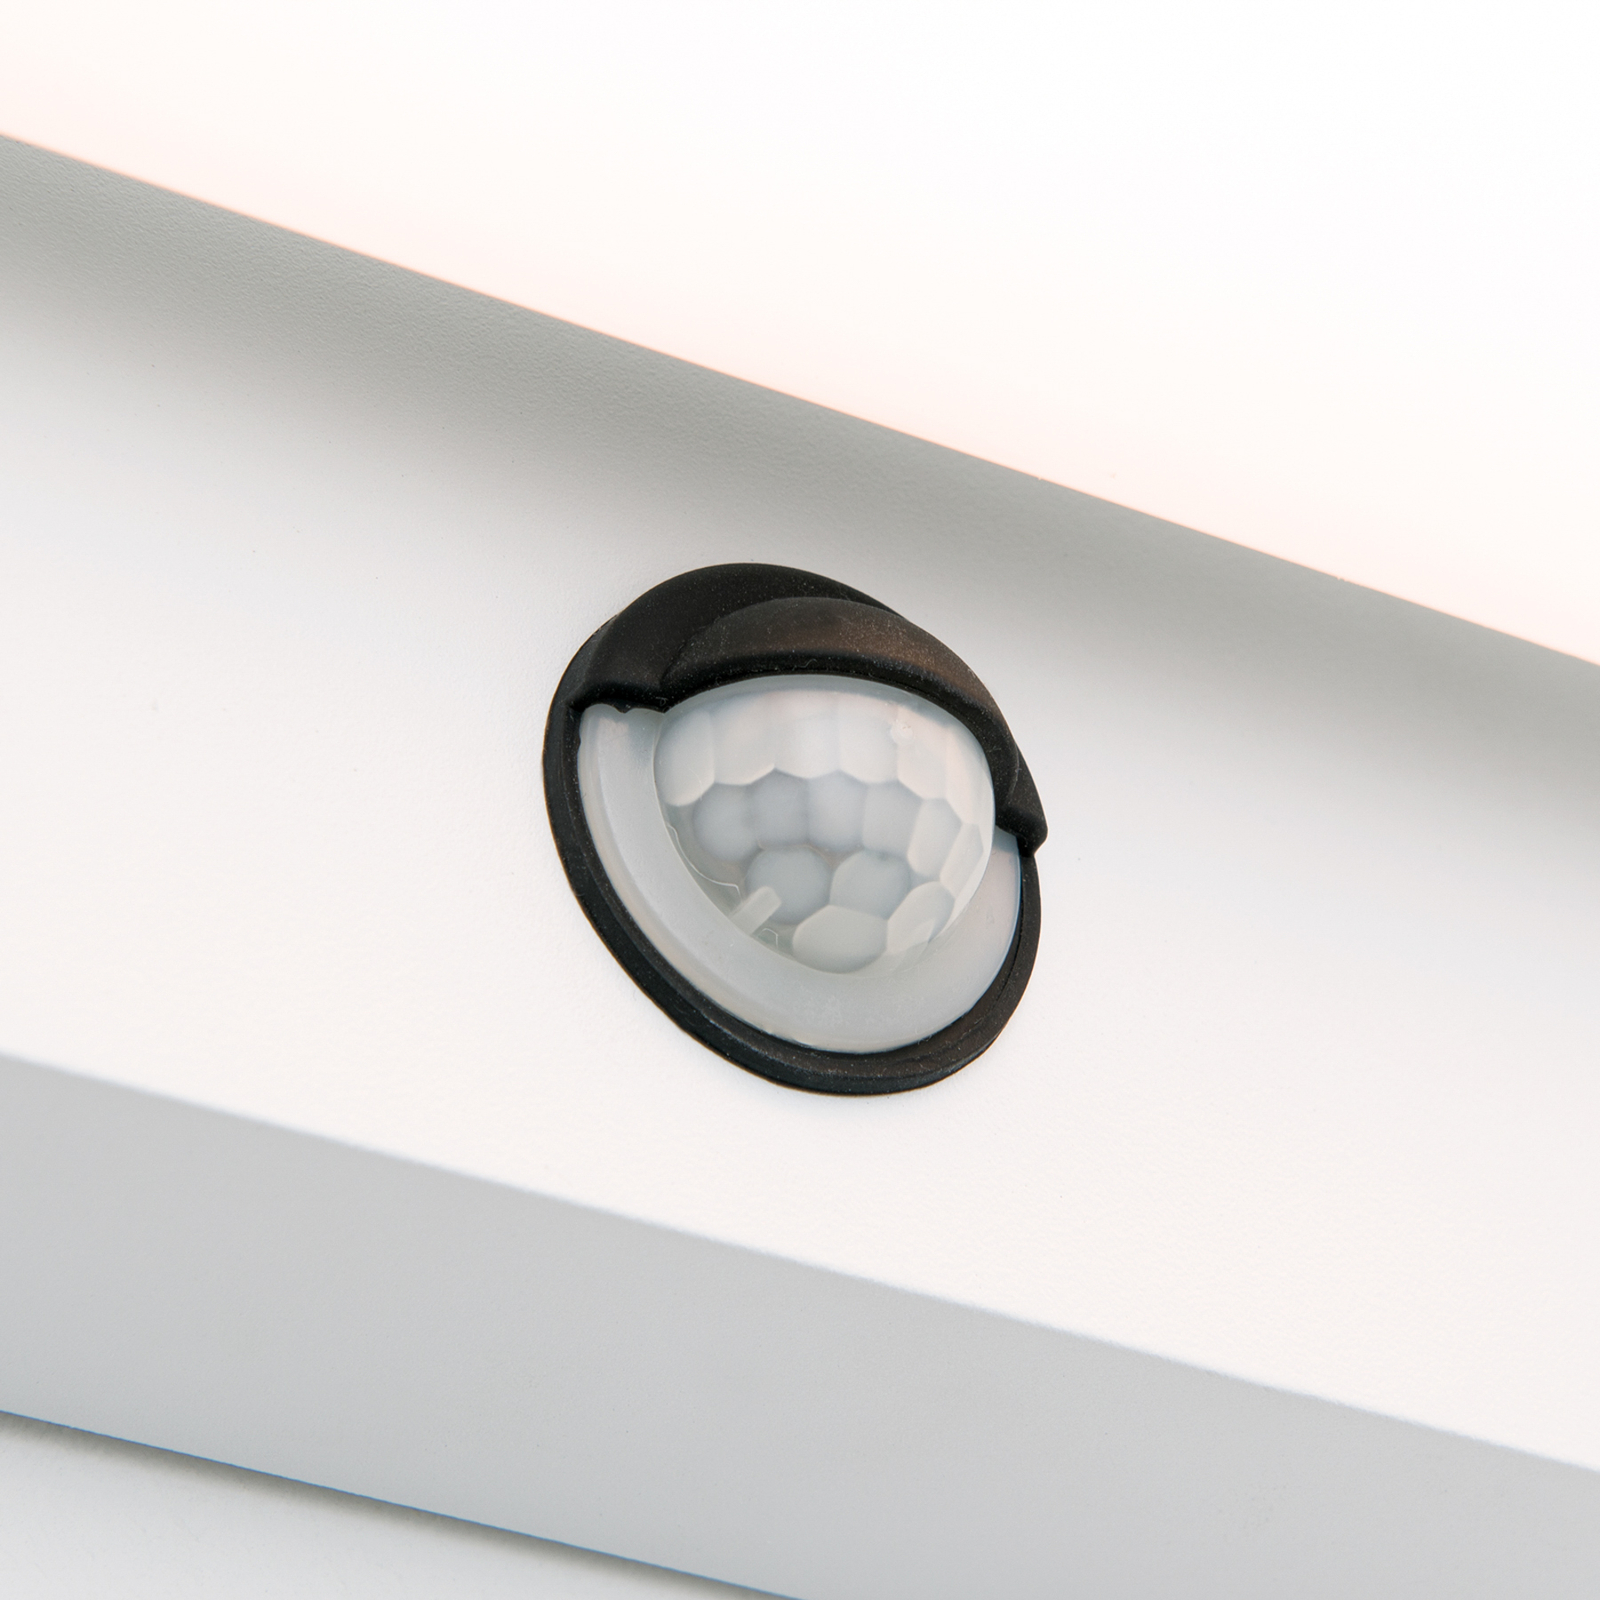 Ginger LED outdoor wall light sensor, white, IP54